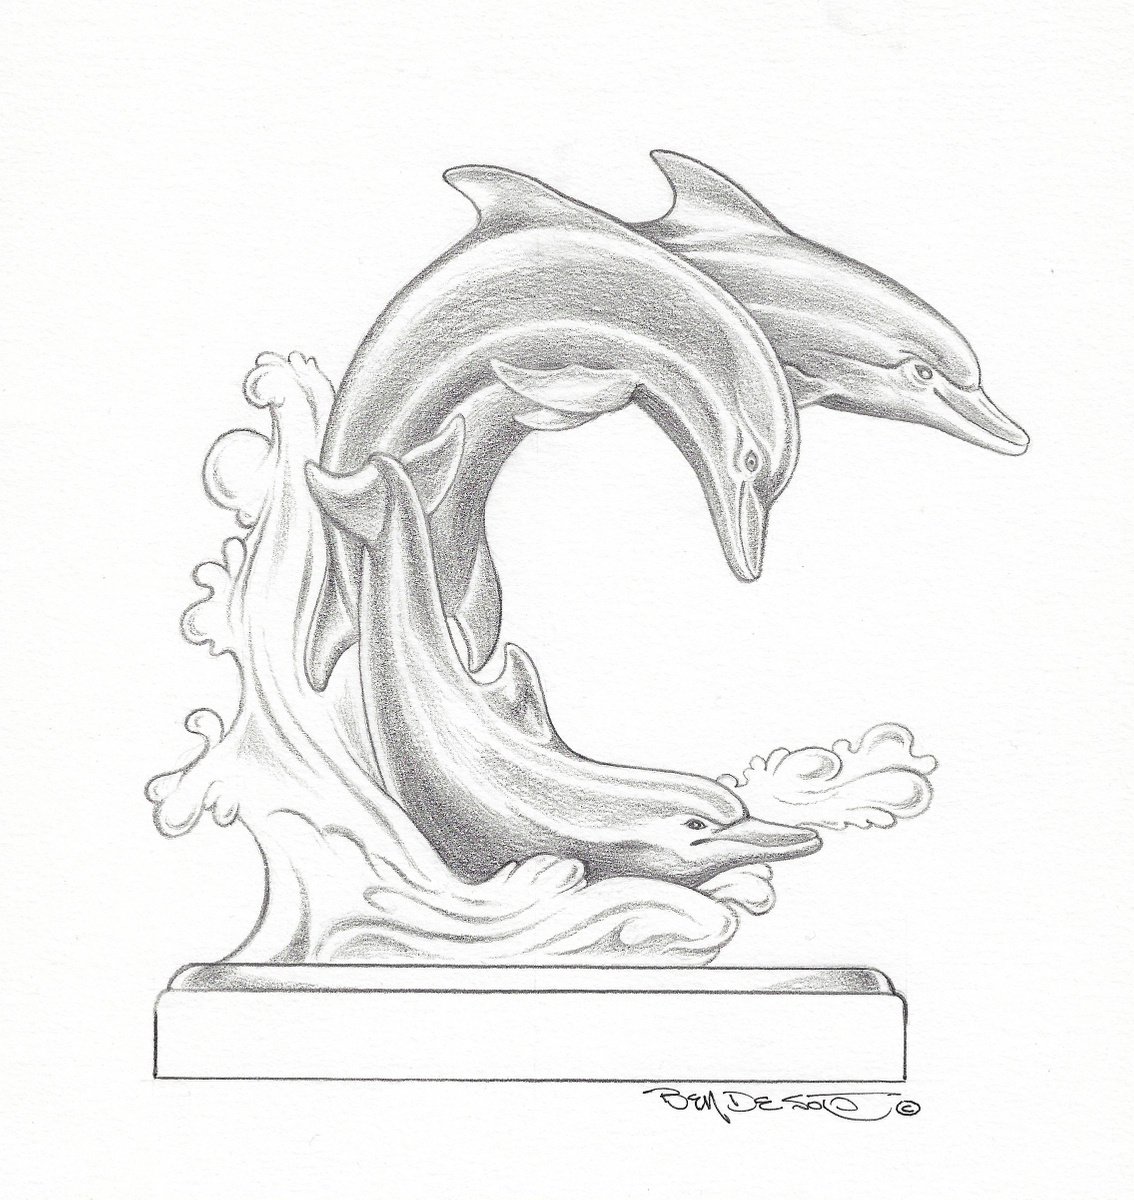 Dolphins by Ben De Soto